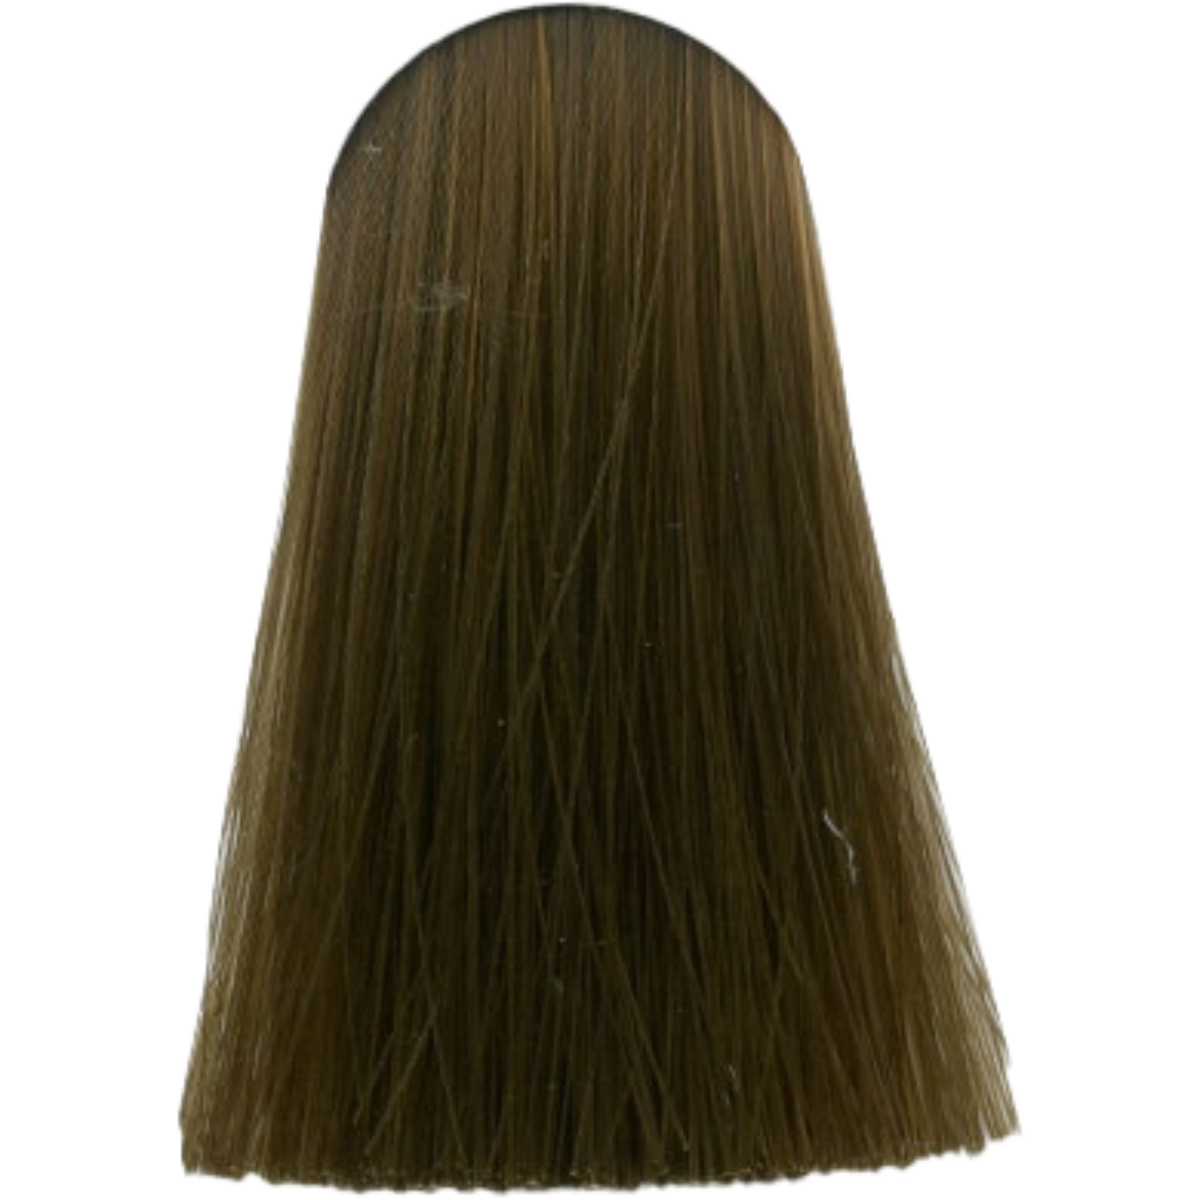 צבע שיער 6.03 DARK BLONDE NATURAL GOLD אינדולה INDOLA צבע בסיס לשיער 60 גרם